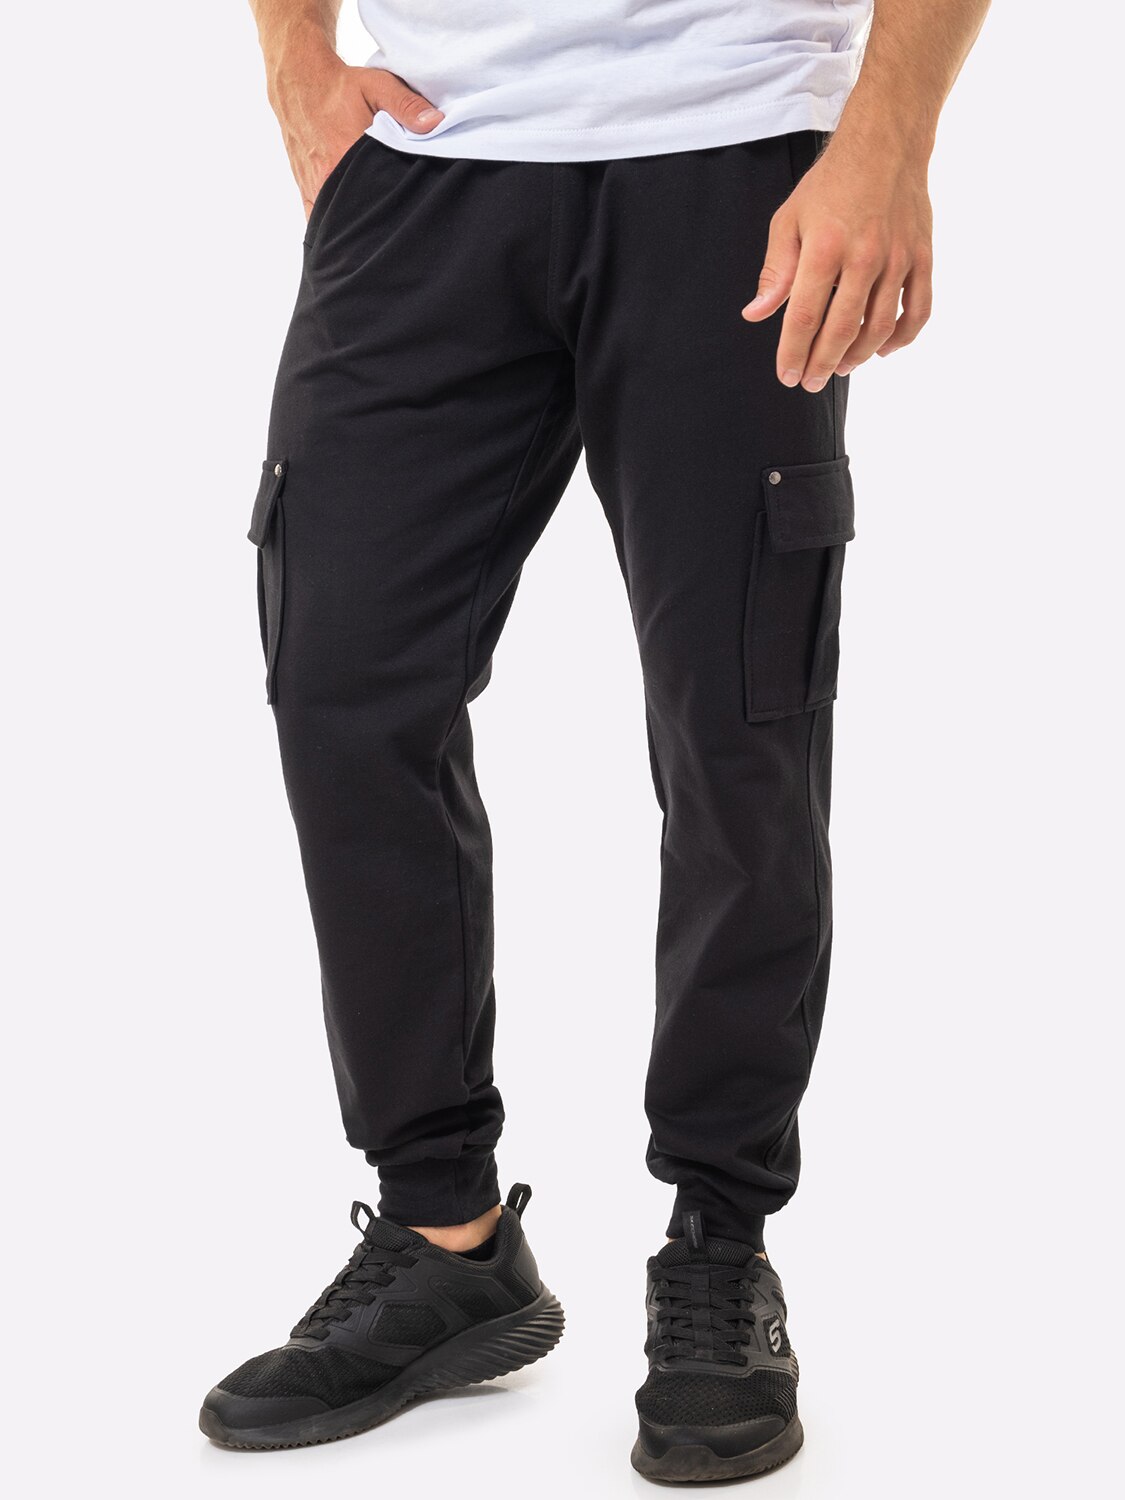 Спортивные брюки мужские HappyFox 9117 черные 50 RU - купить в Happywear, цена на Мегамаркет